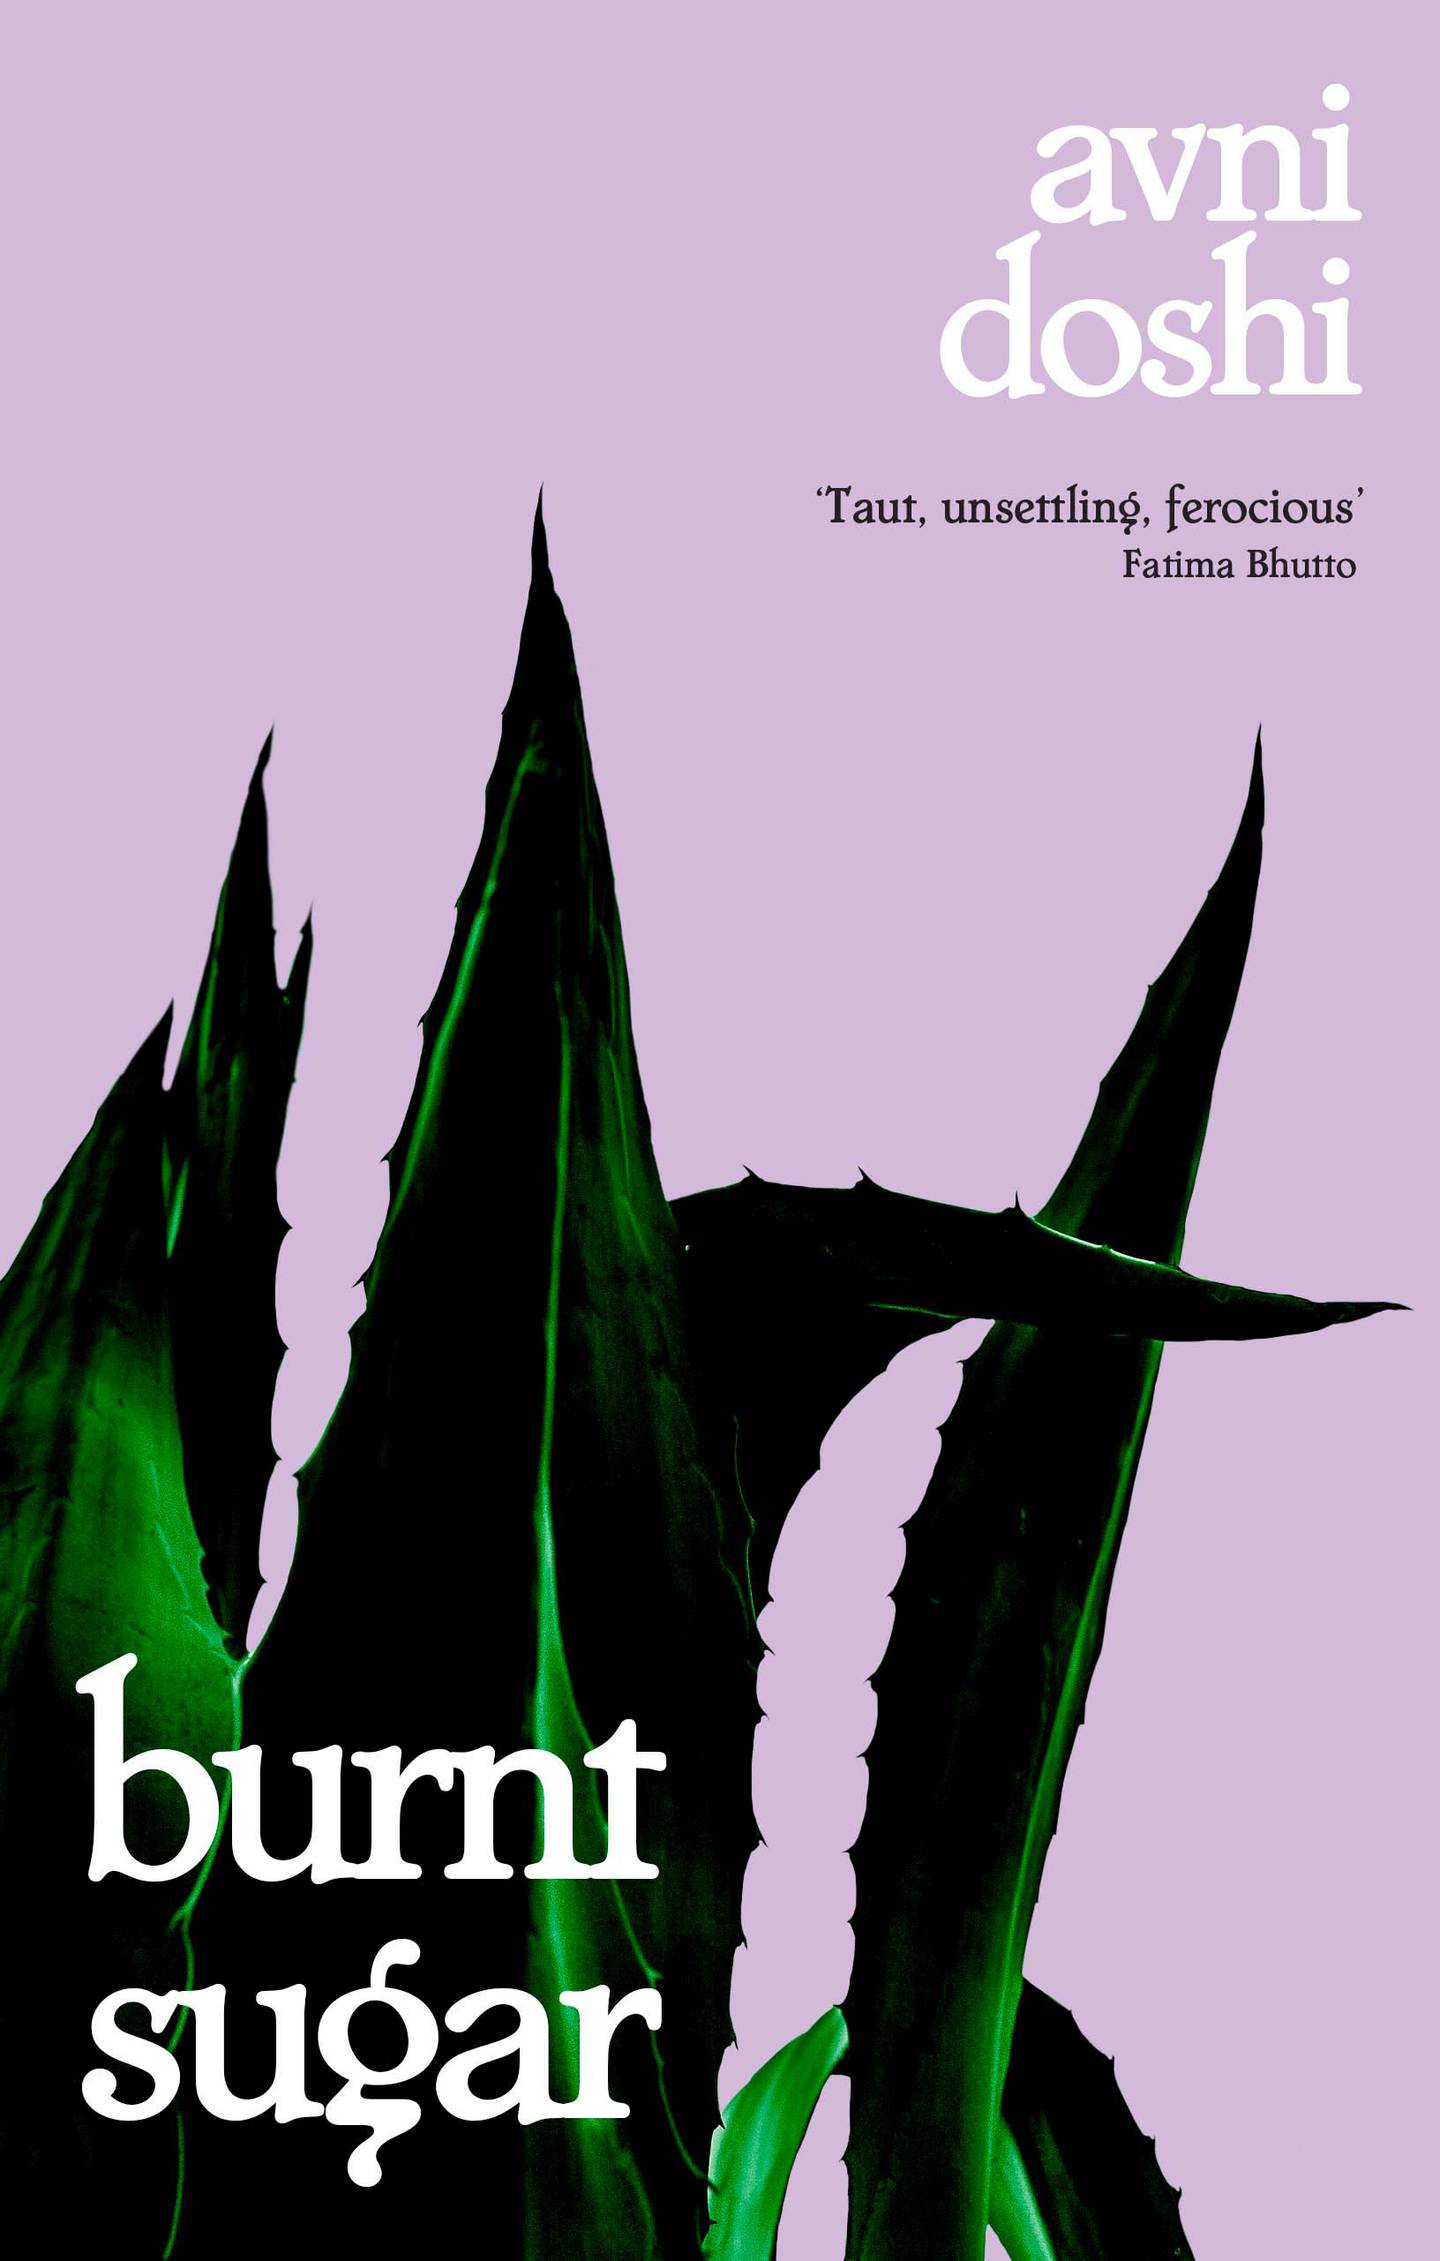 Burnt Sugar by Avni Doshi published by Hamish Hamilton. Courtesy Penguin UK